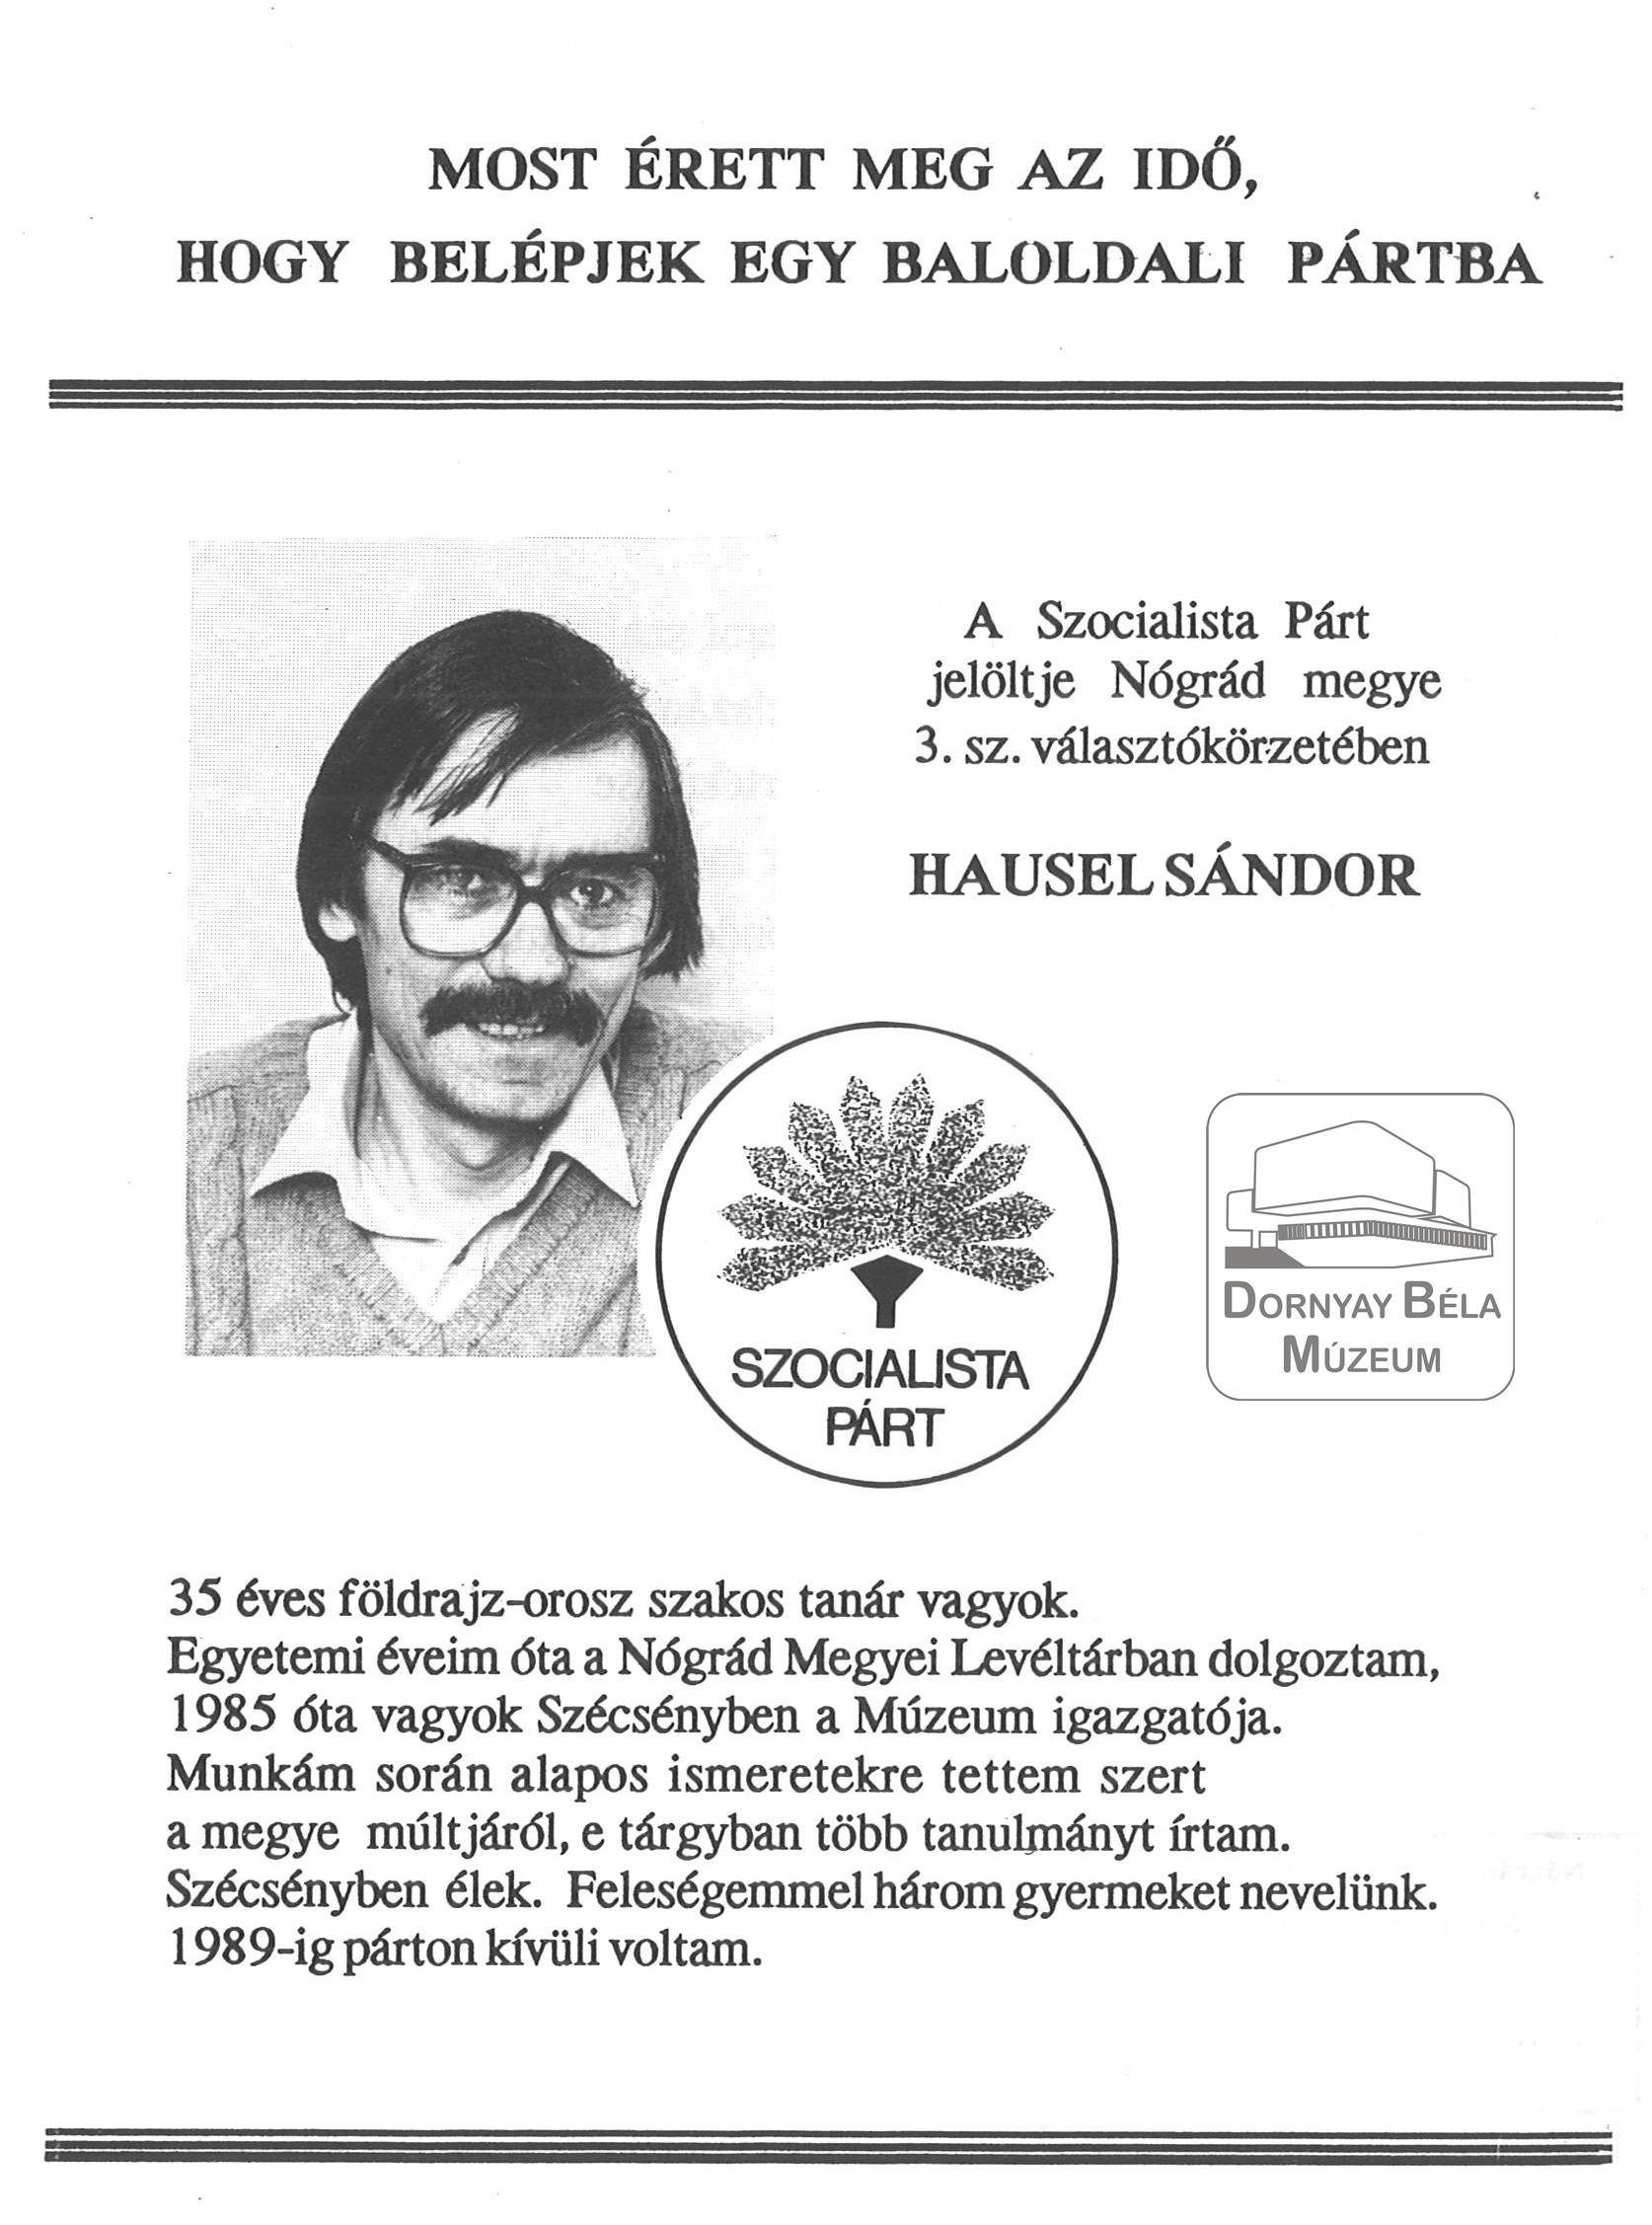 Hausel Sándornak, az MSZP szécsényi jelöltjének bemutatkozó röplapja fénykép (Dornyay Béla Múzeum, Salgótarján CC BY-NC-SA)